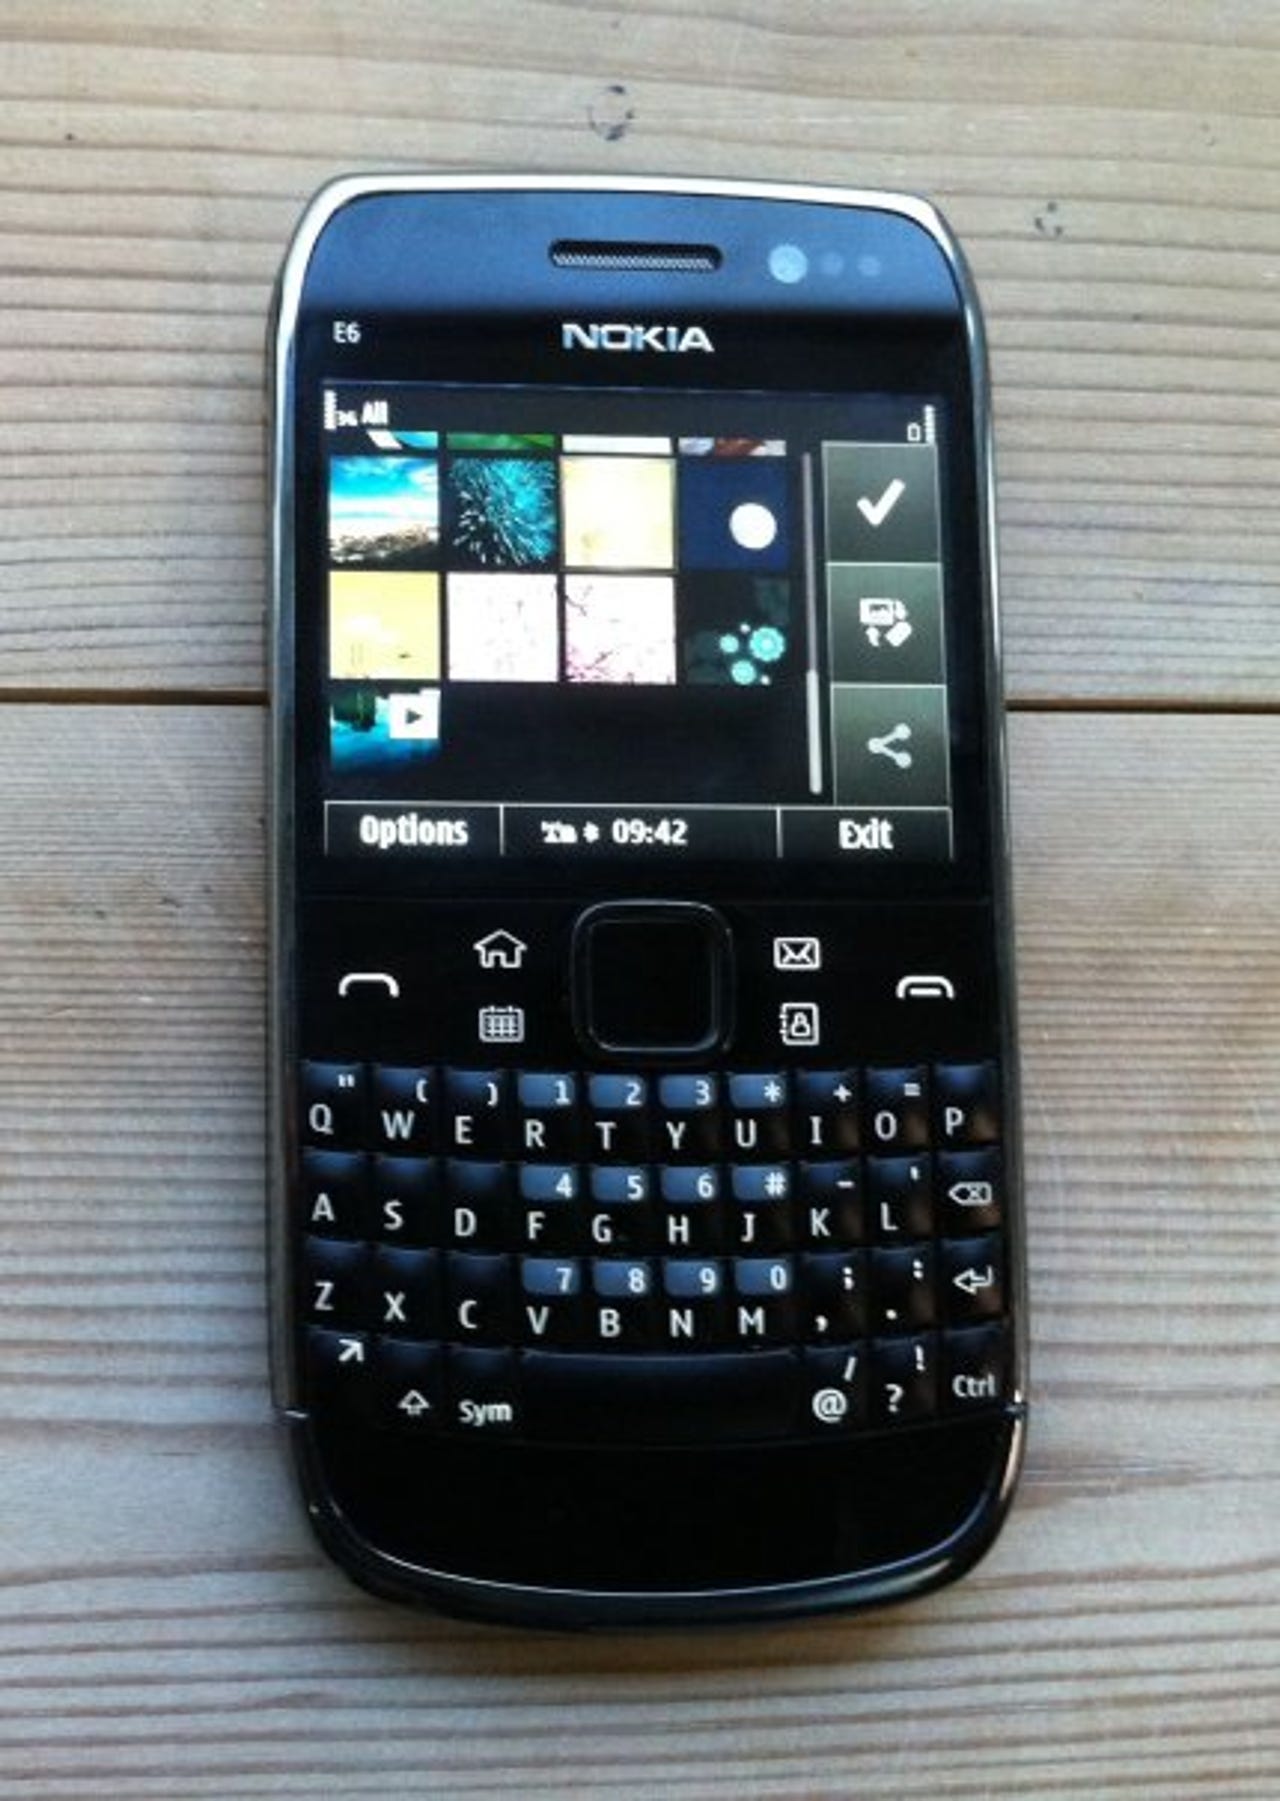 40154319-3-430-605-nokia-e6-smartphone-black-close.jpg